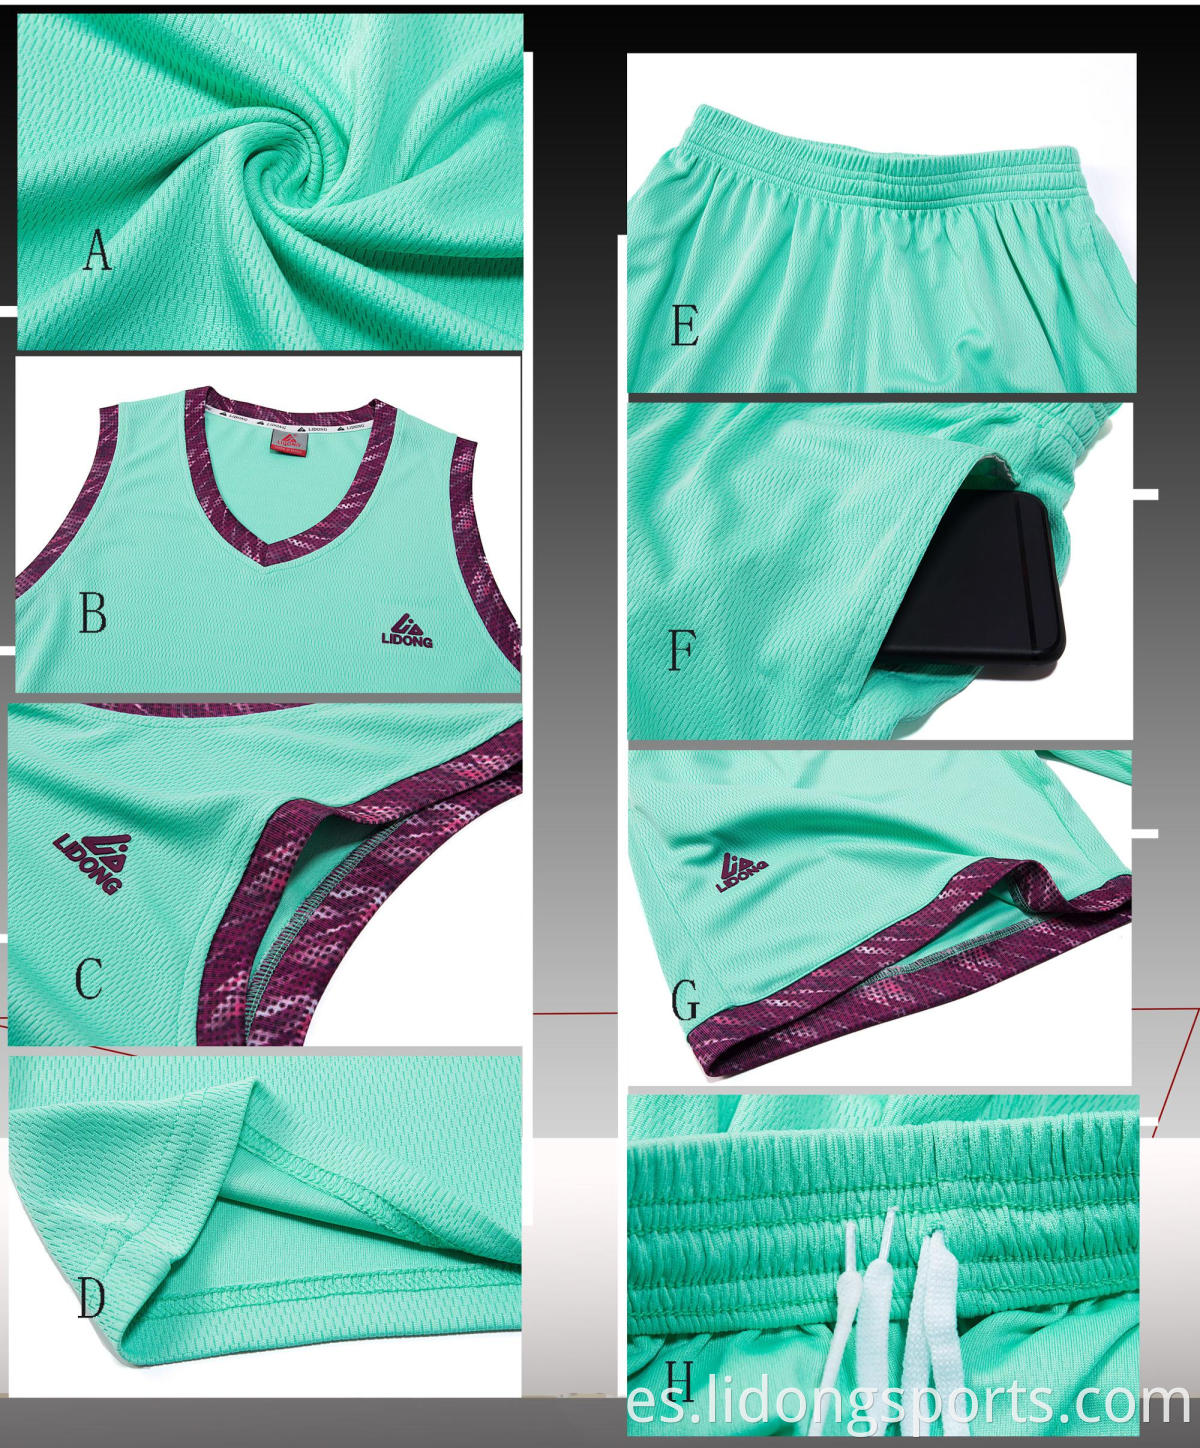 Diseño de uniforme de jersey de baloncesto de sublimación de alta calidad color azul al por mayor ropa deportiva